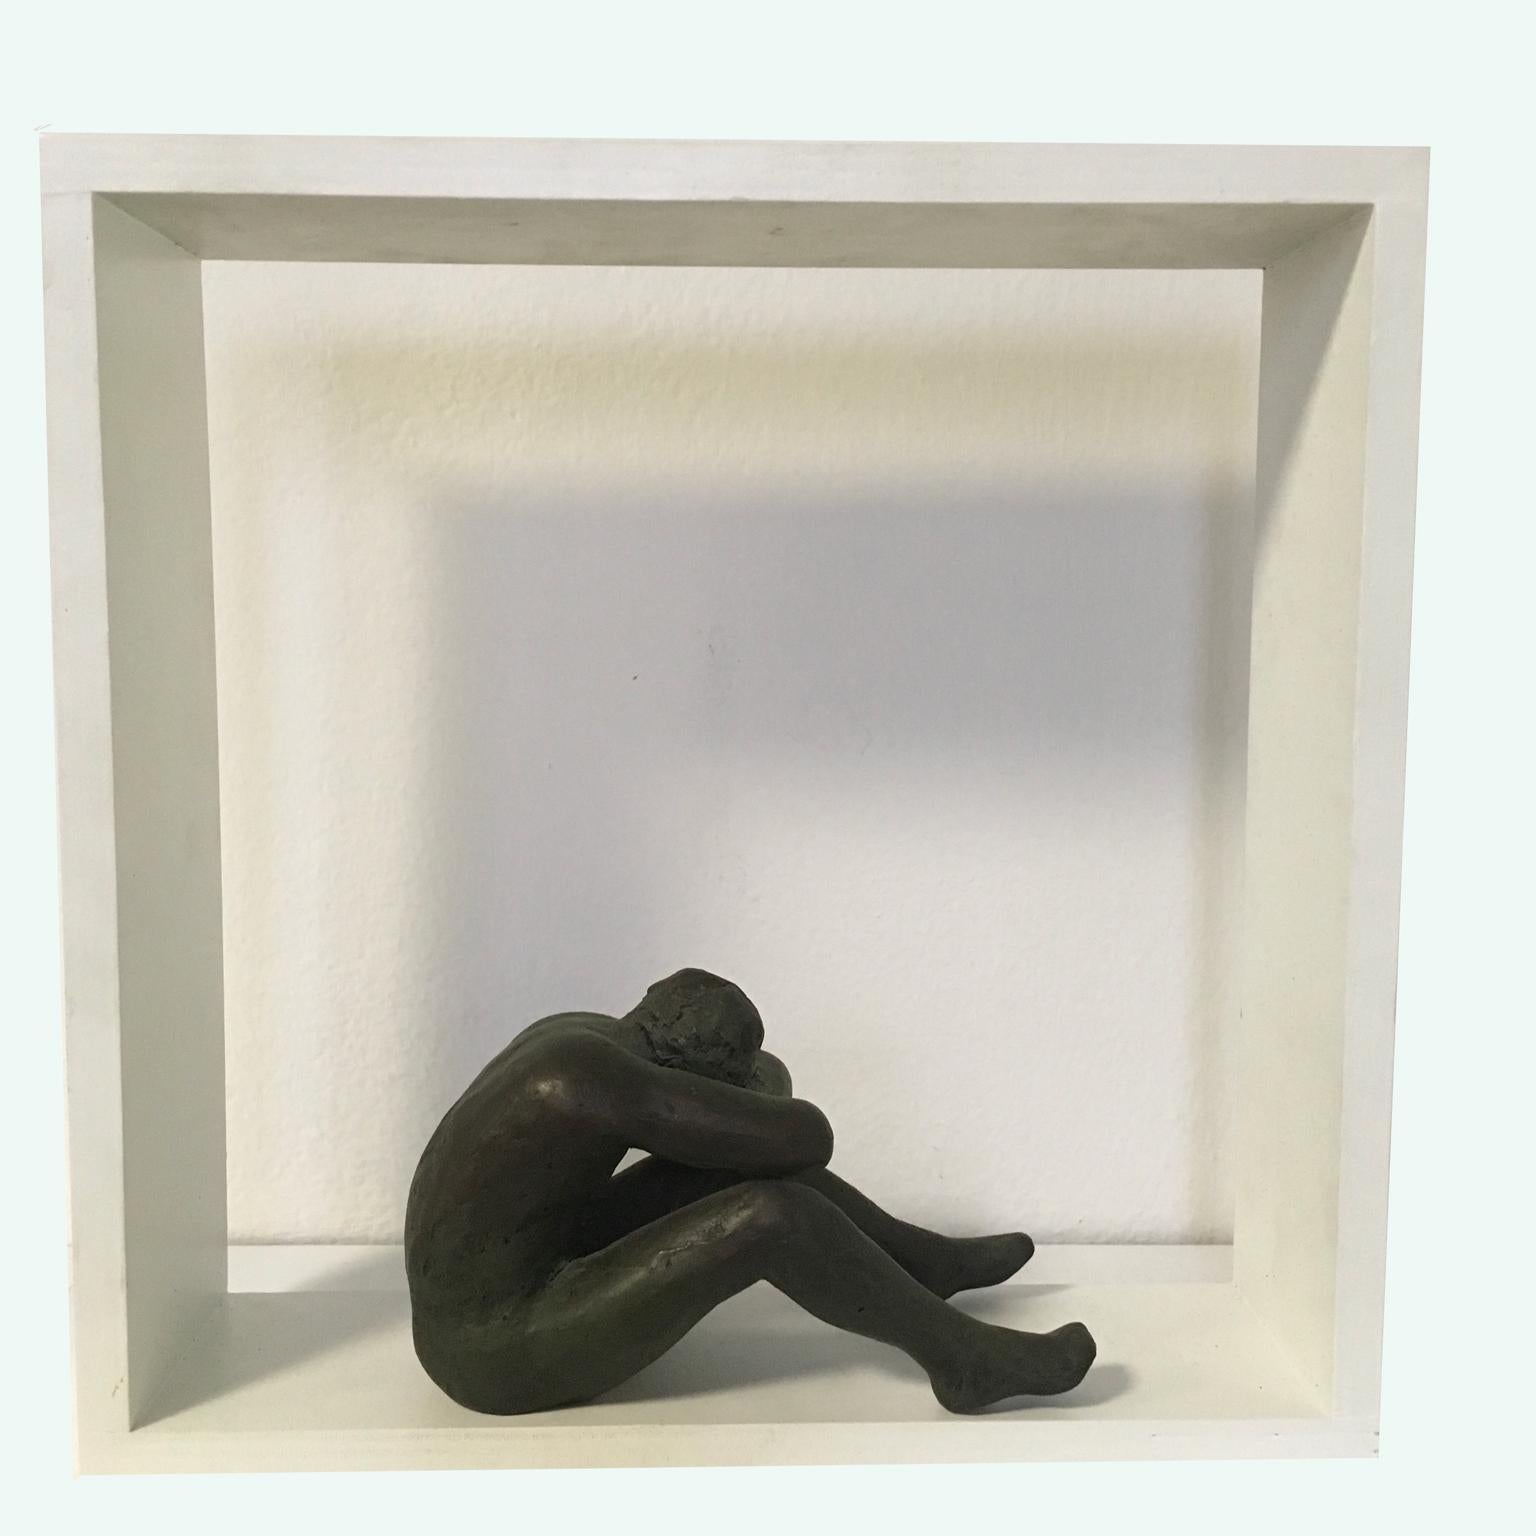 Sculpture figurative en bronze patiné moulé « Crouched Body » de Sergio Monari 1985